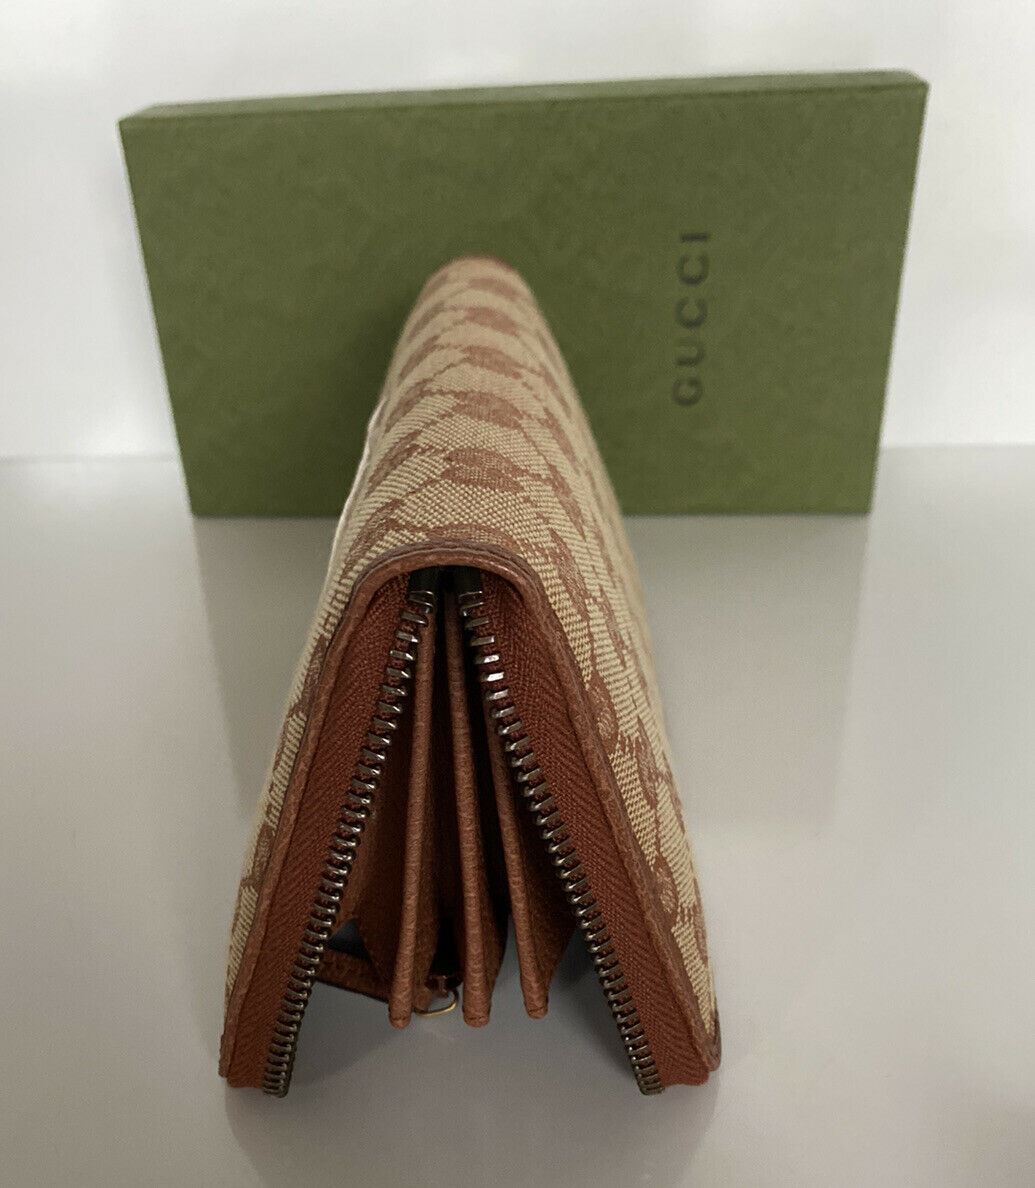 Новый тканевый кошелек Gucci GG NY Yankees на молнии бежевого цвета, производство Италия 